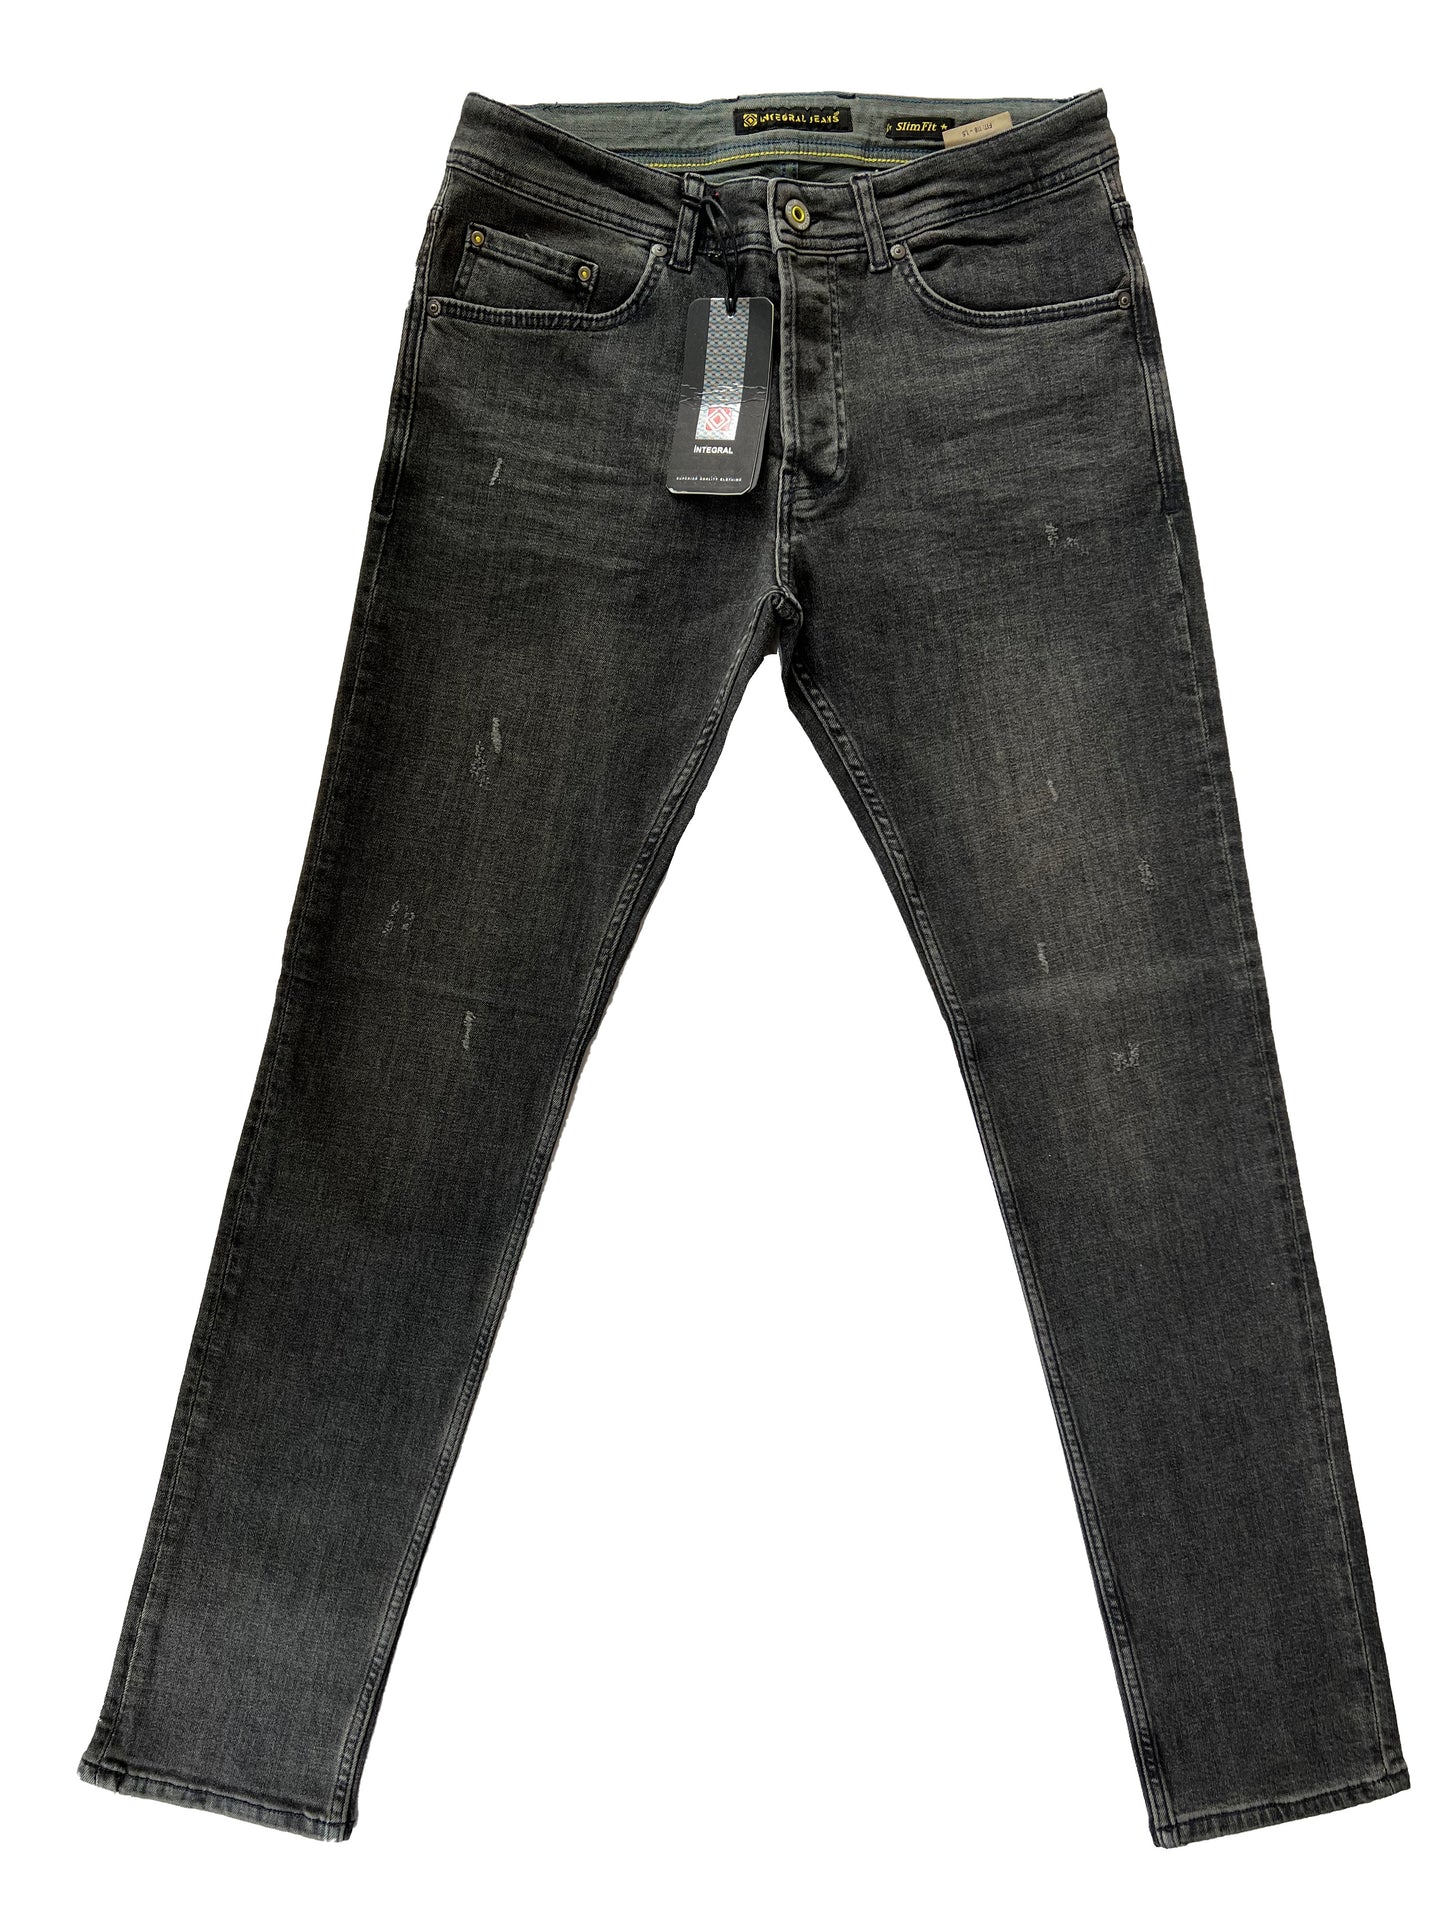 Jeans, pantalons confortables coupe ajustée pour hommes - Malton 